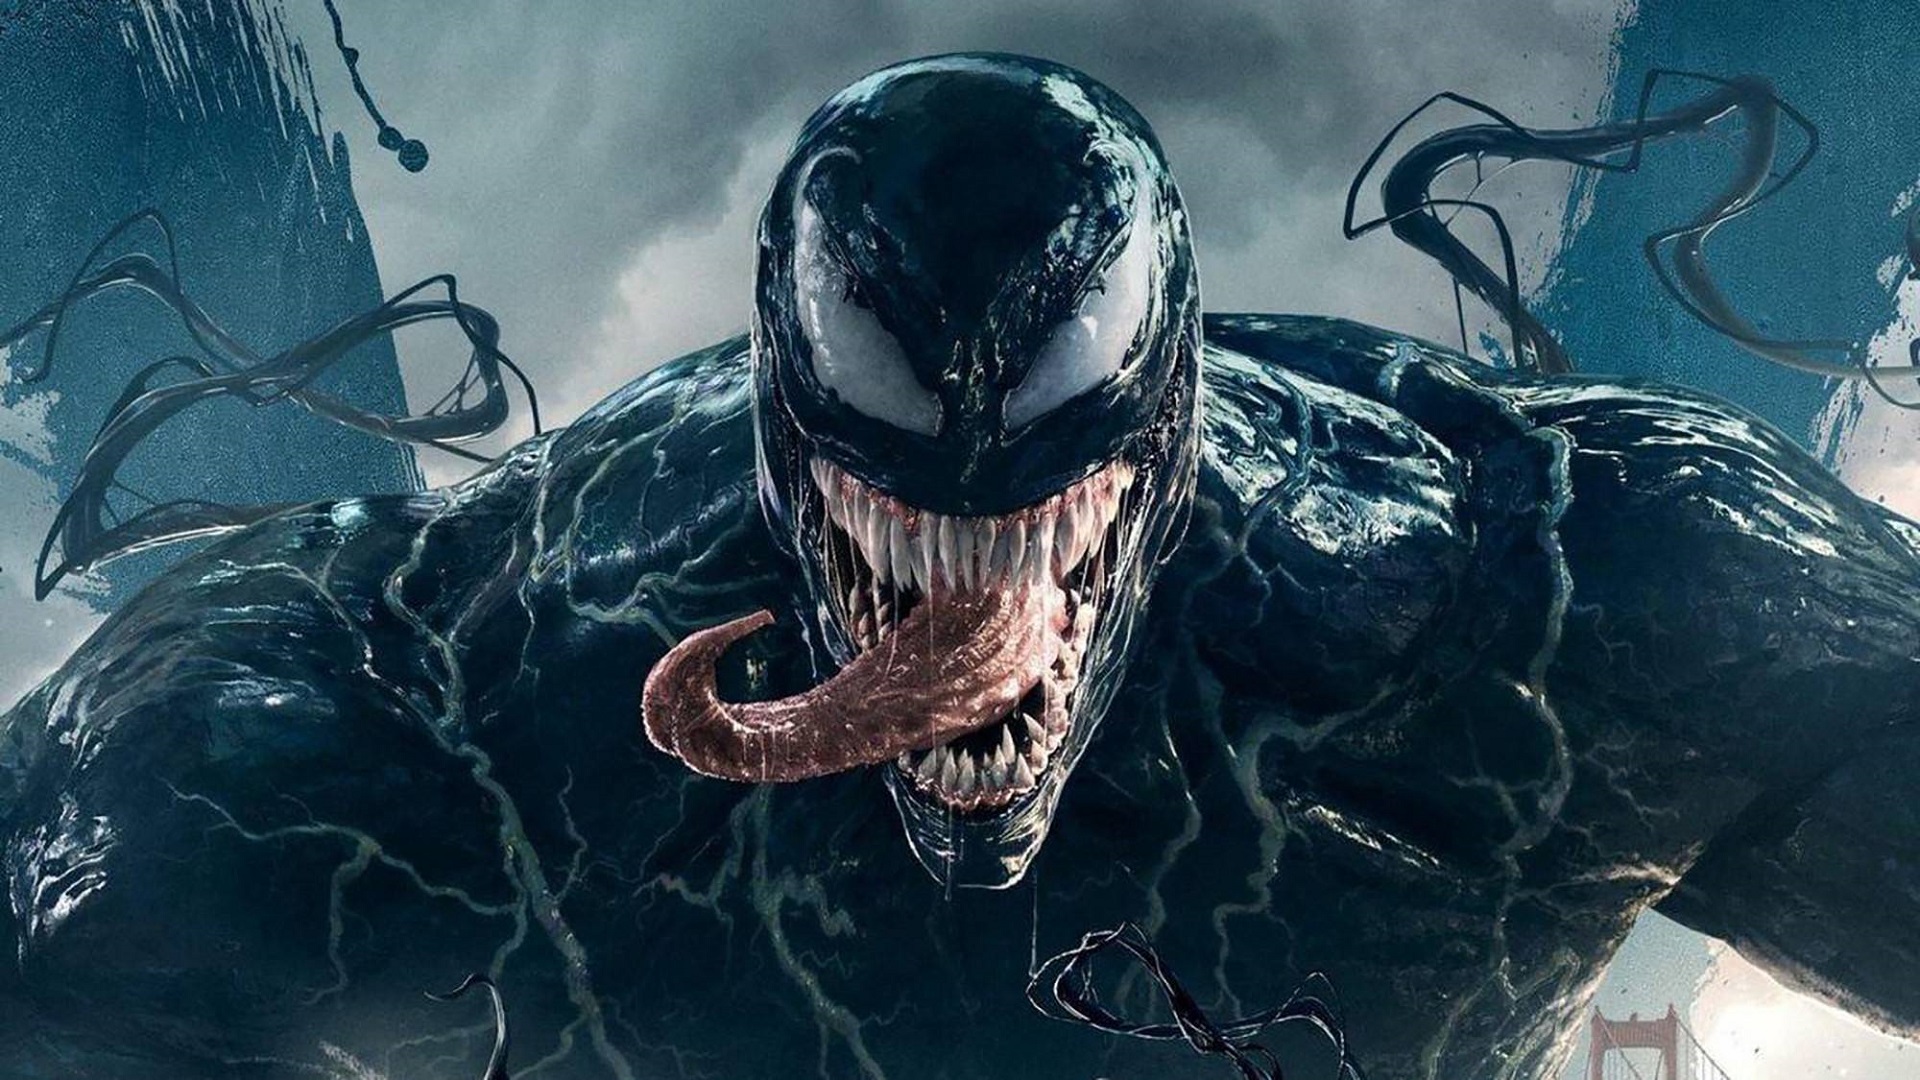 En symbios mellan film och vetenskap: en ny art av giftig spindel har upptäckts i Australien och fått sitt namn efter Marvels antihjälte Tom Hardy.